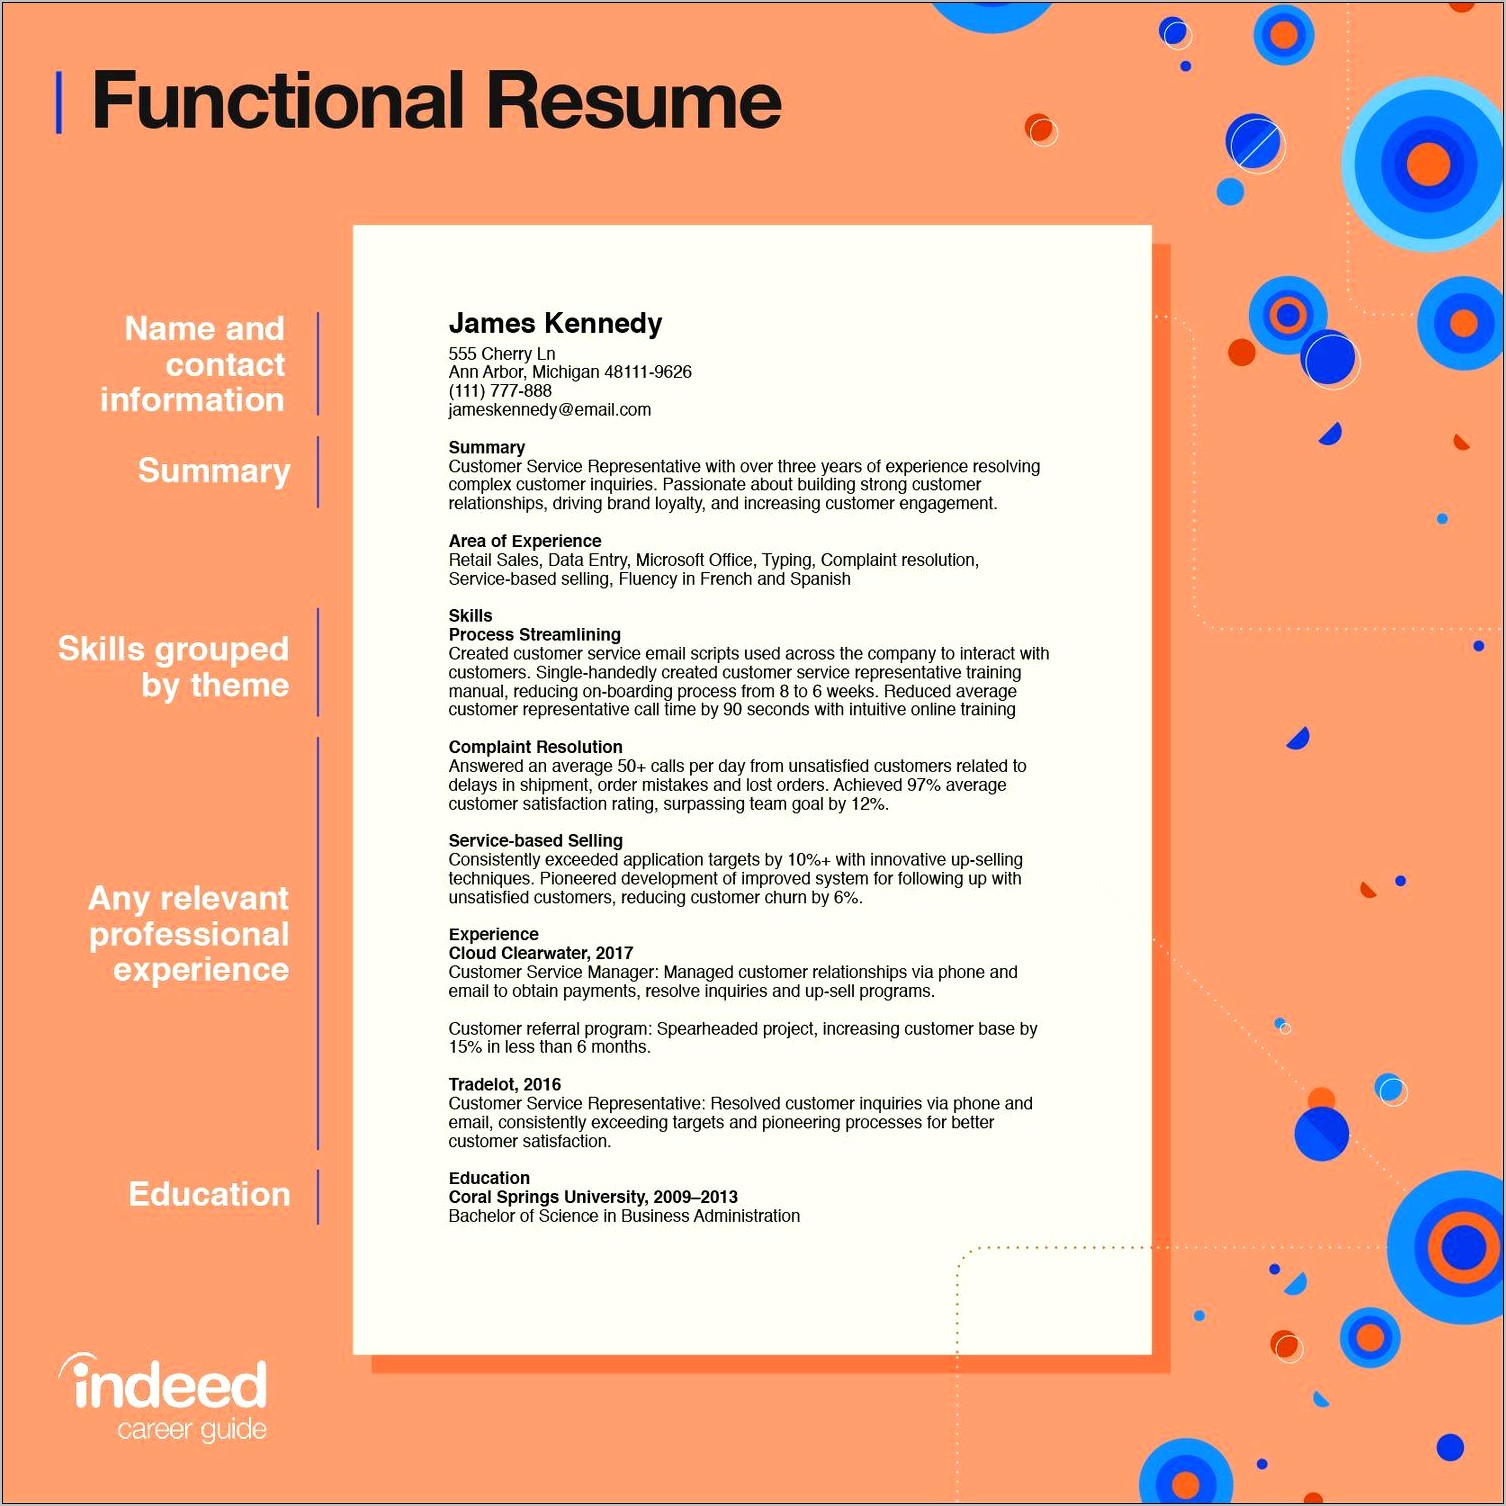 Chronological Order Of Jobs On Resume